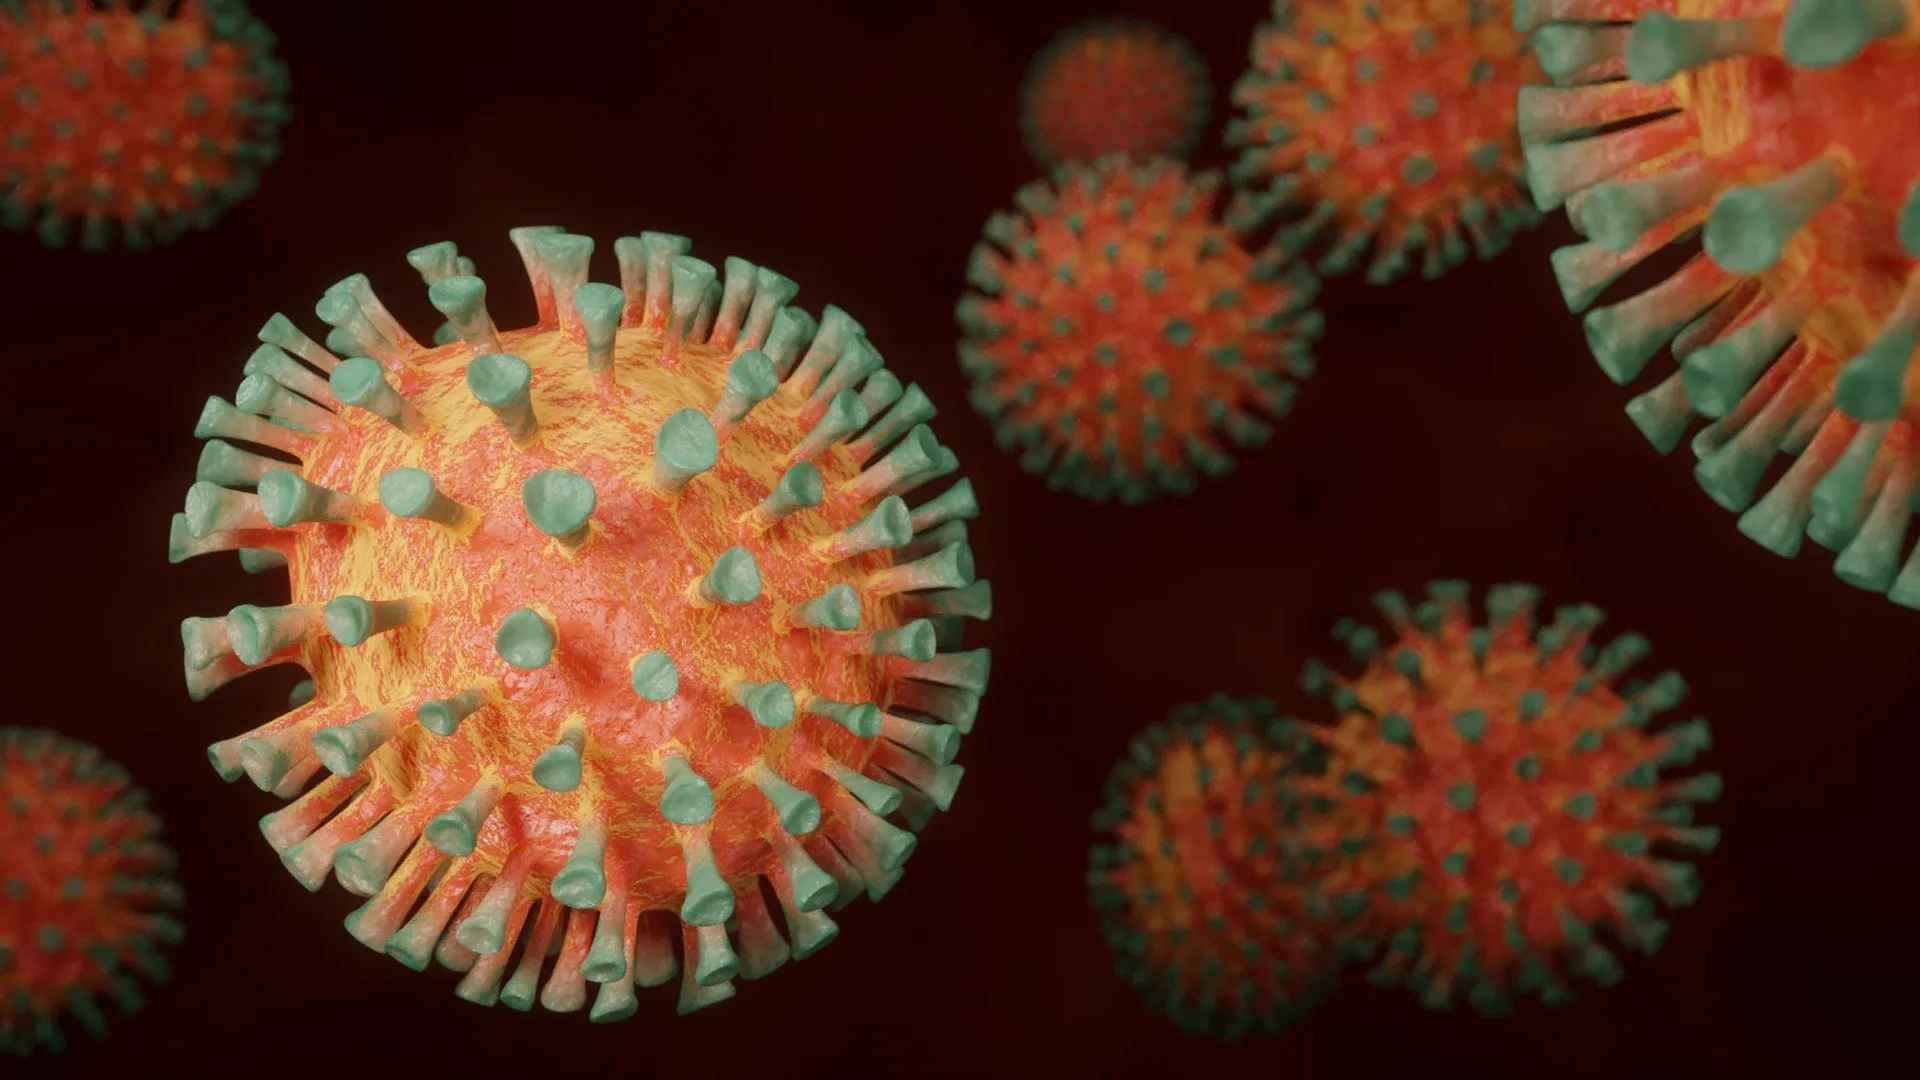 coronavirus graphics